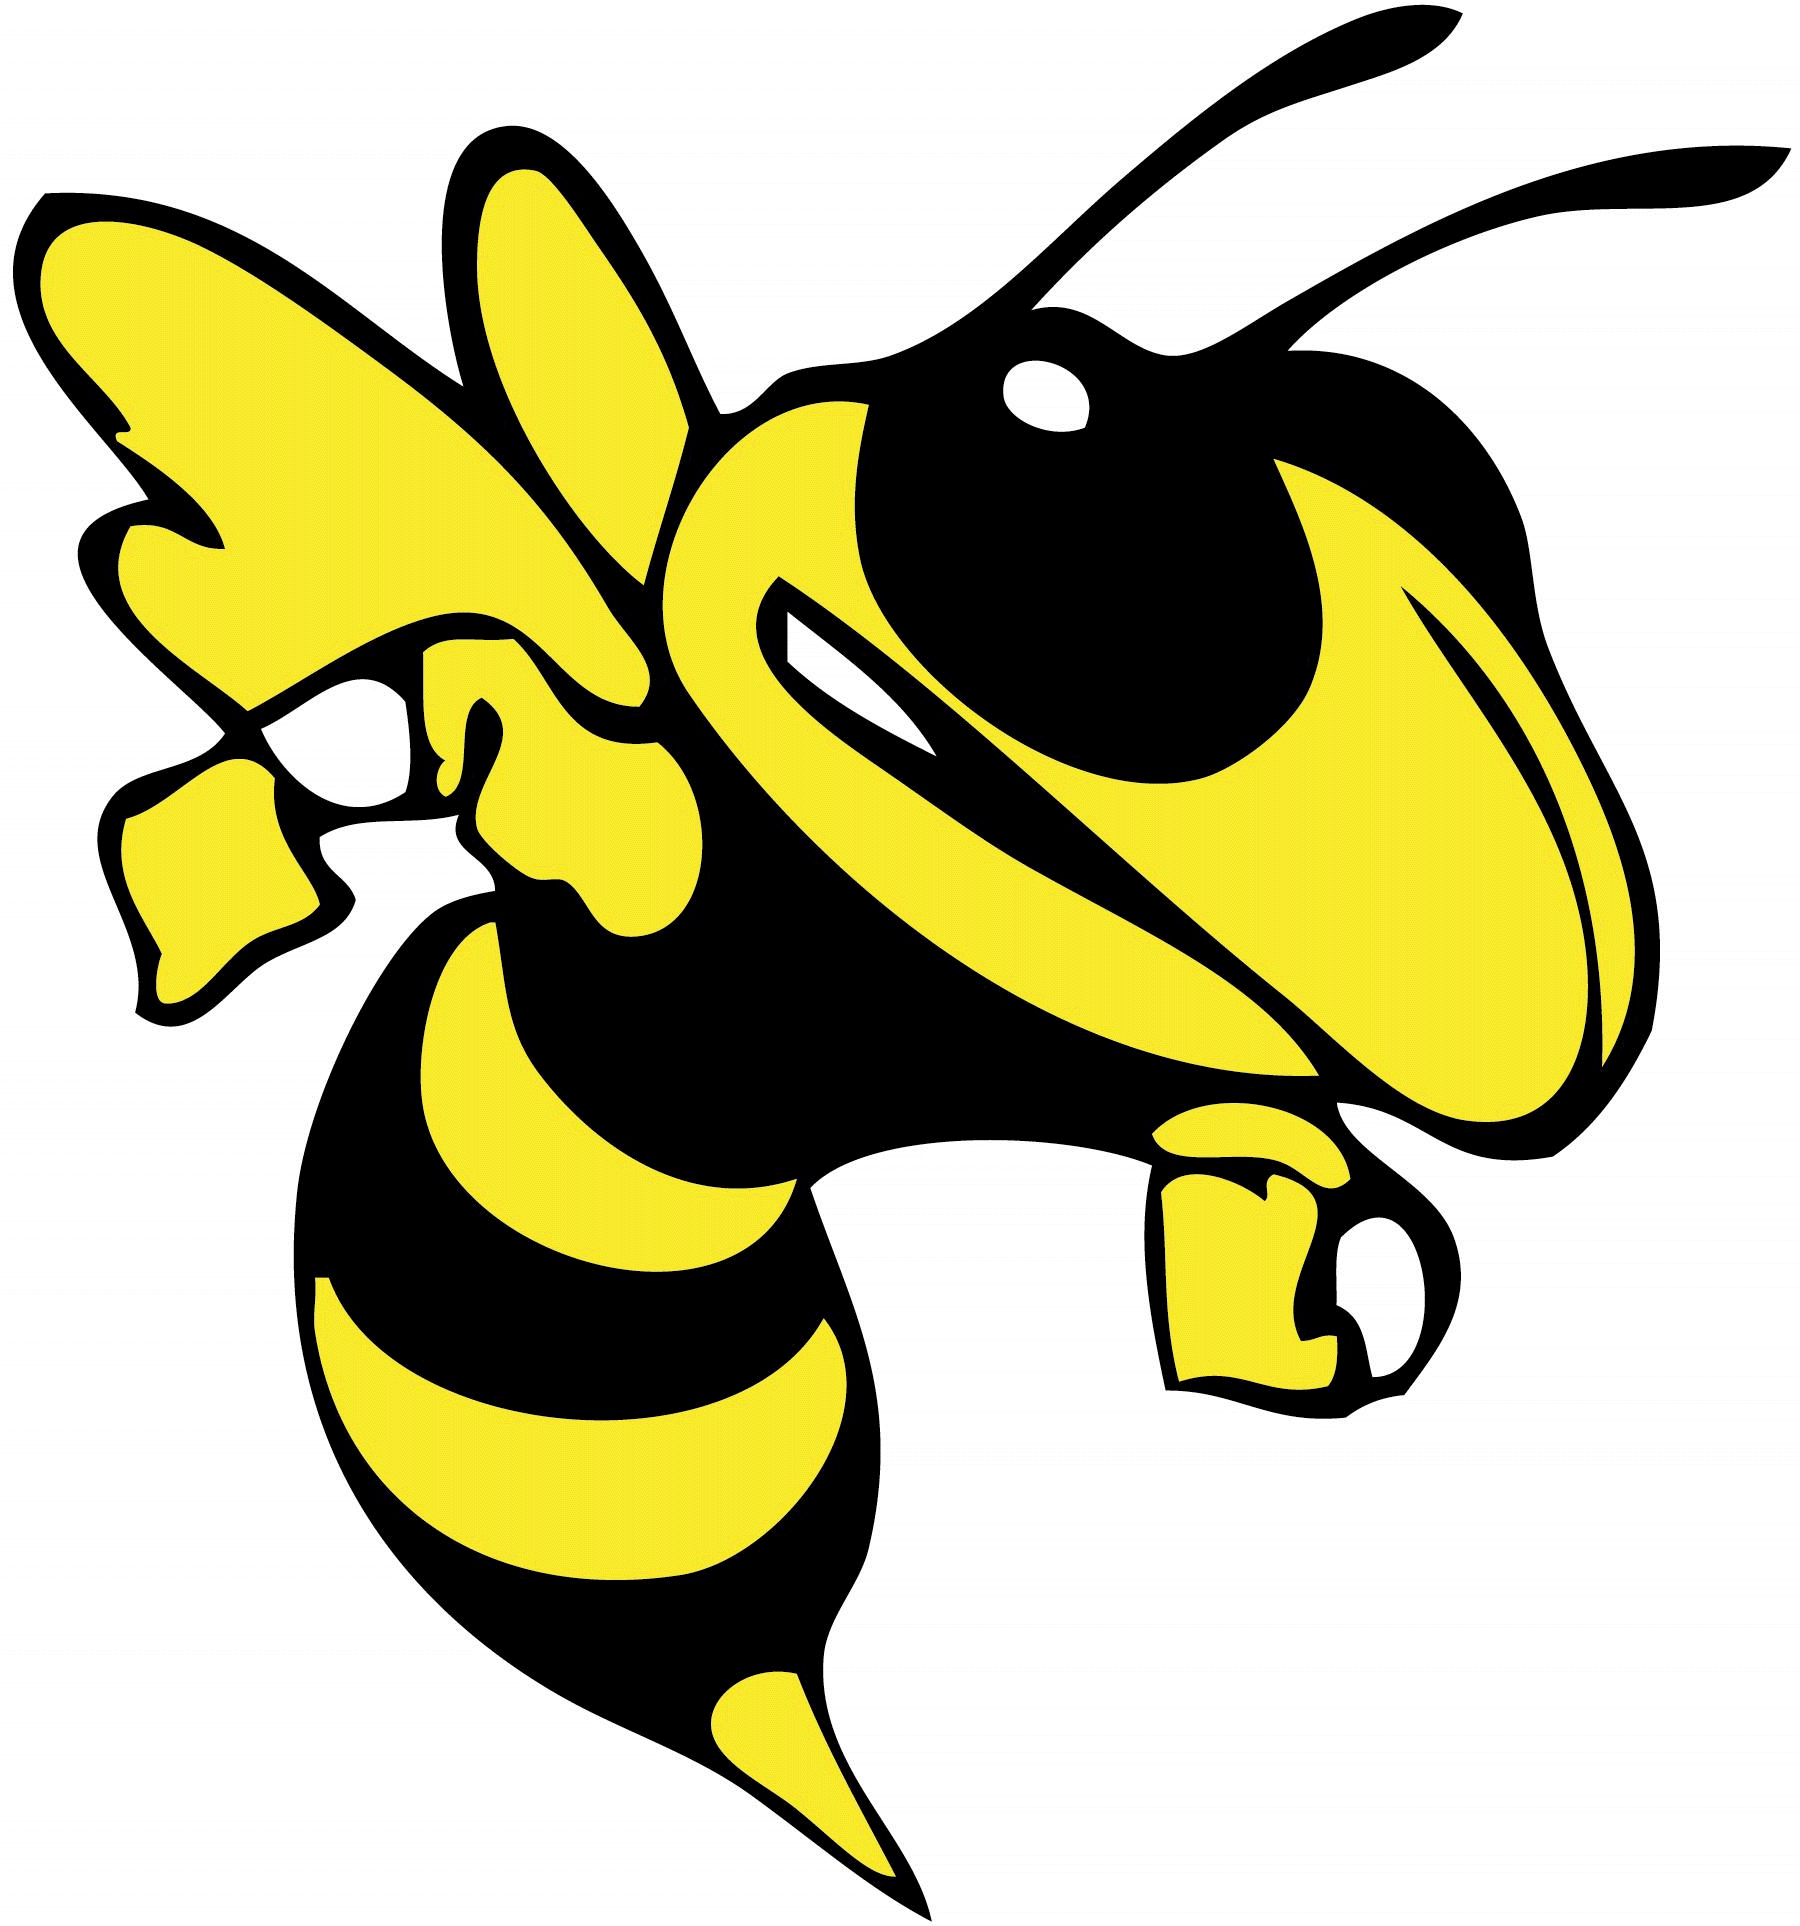 Hornet logo clipart 3